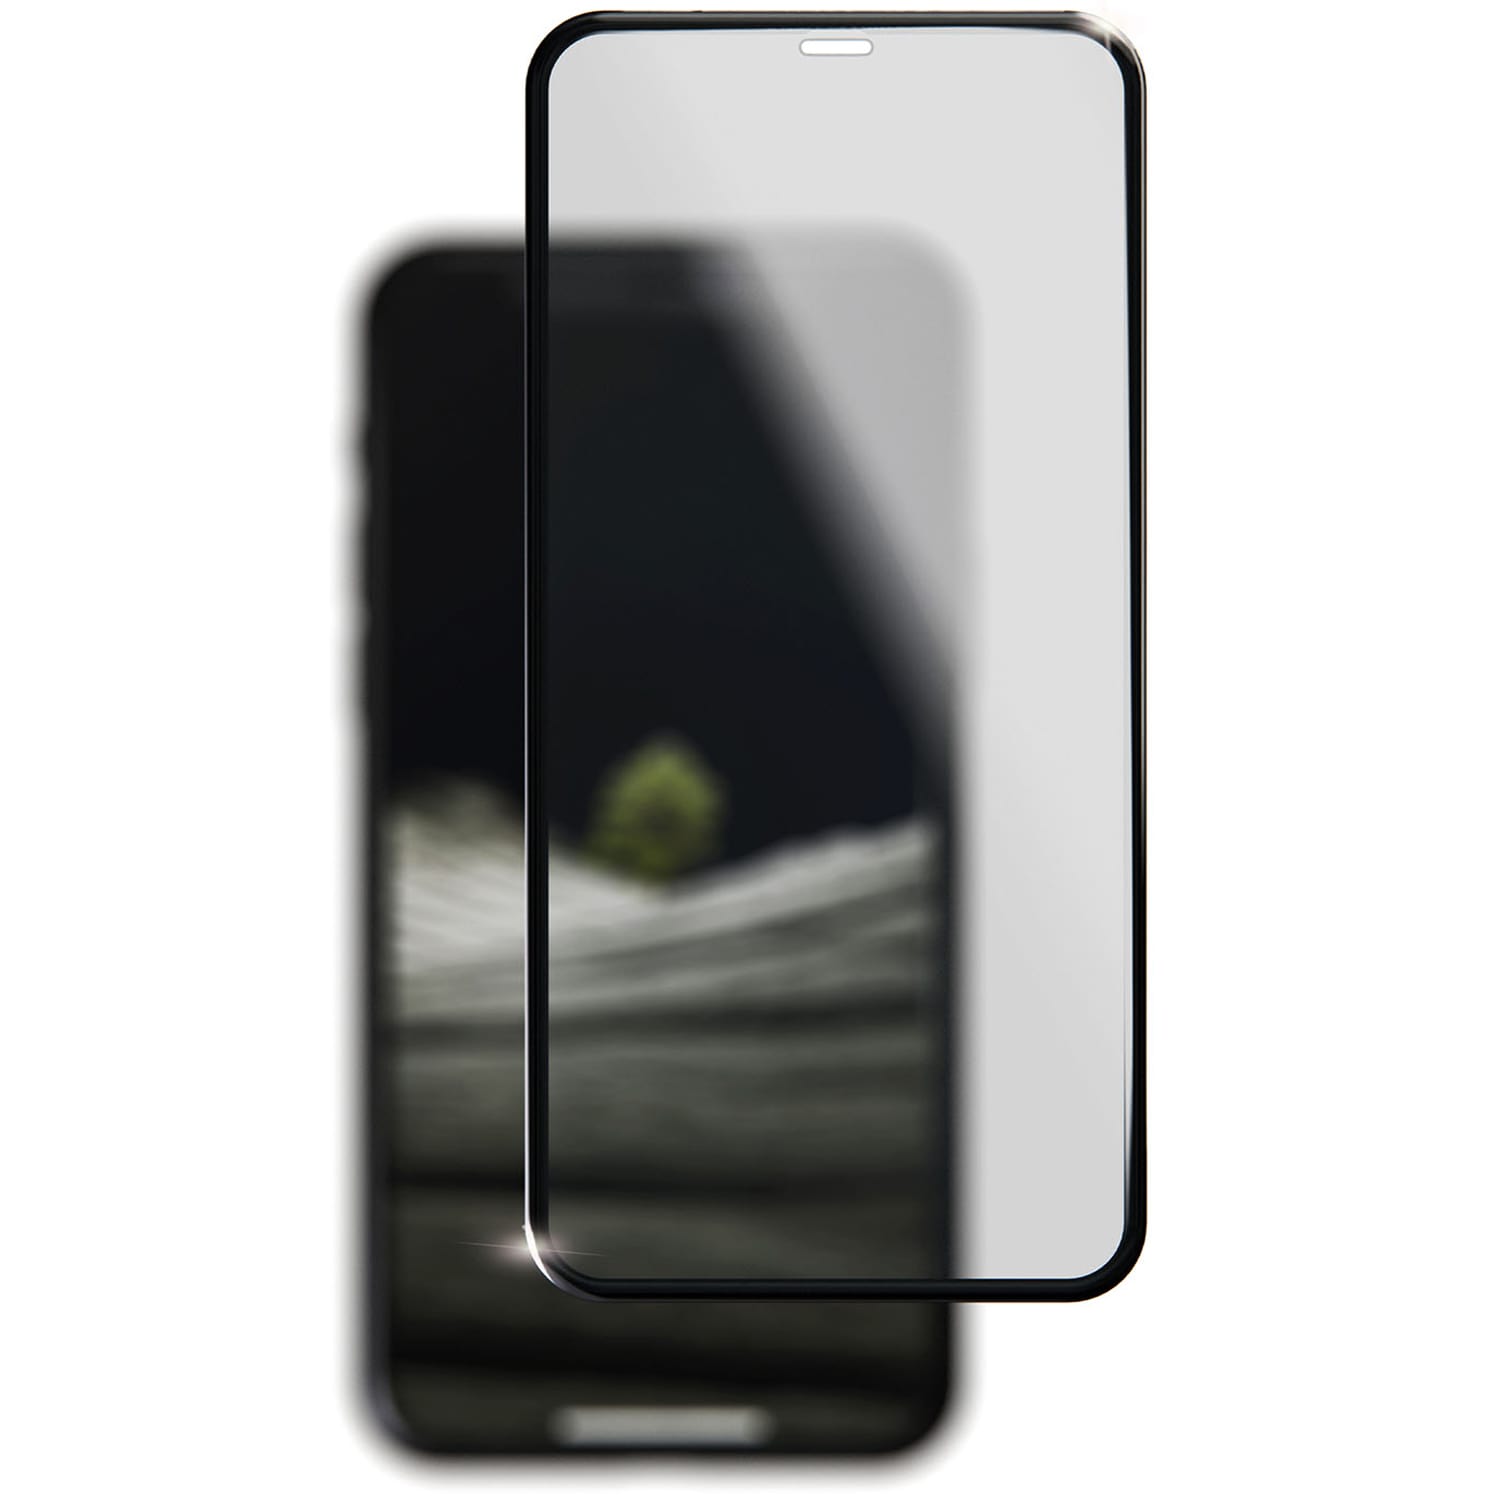 Стекло защитное 3D Breaking для iPhone 12/12 Pro (Черный)